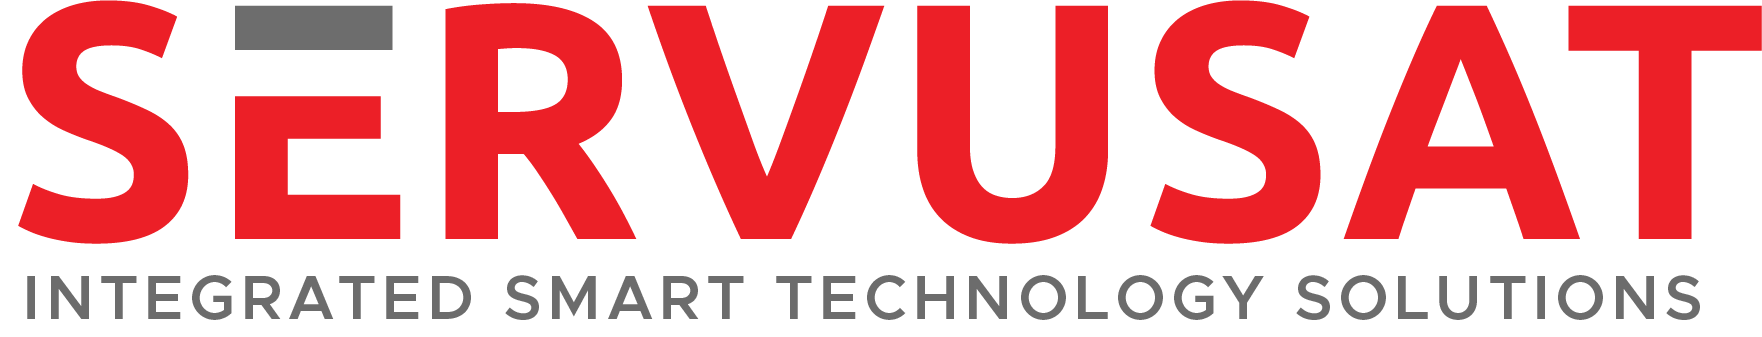 Servusat, LLC Integral Technology Solutions